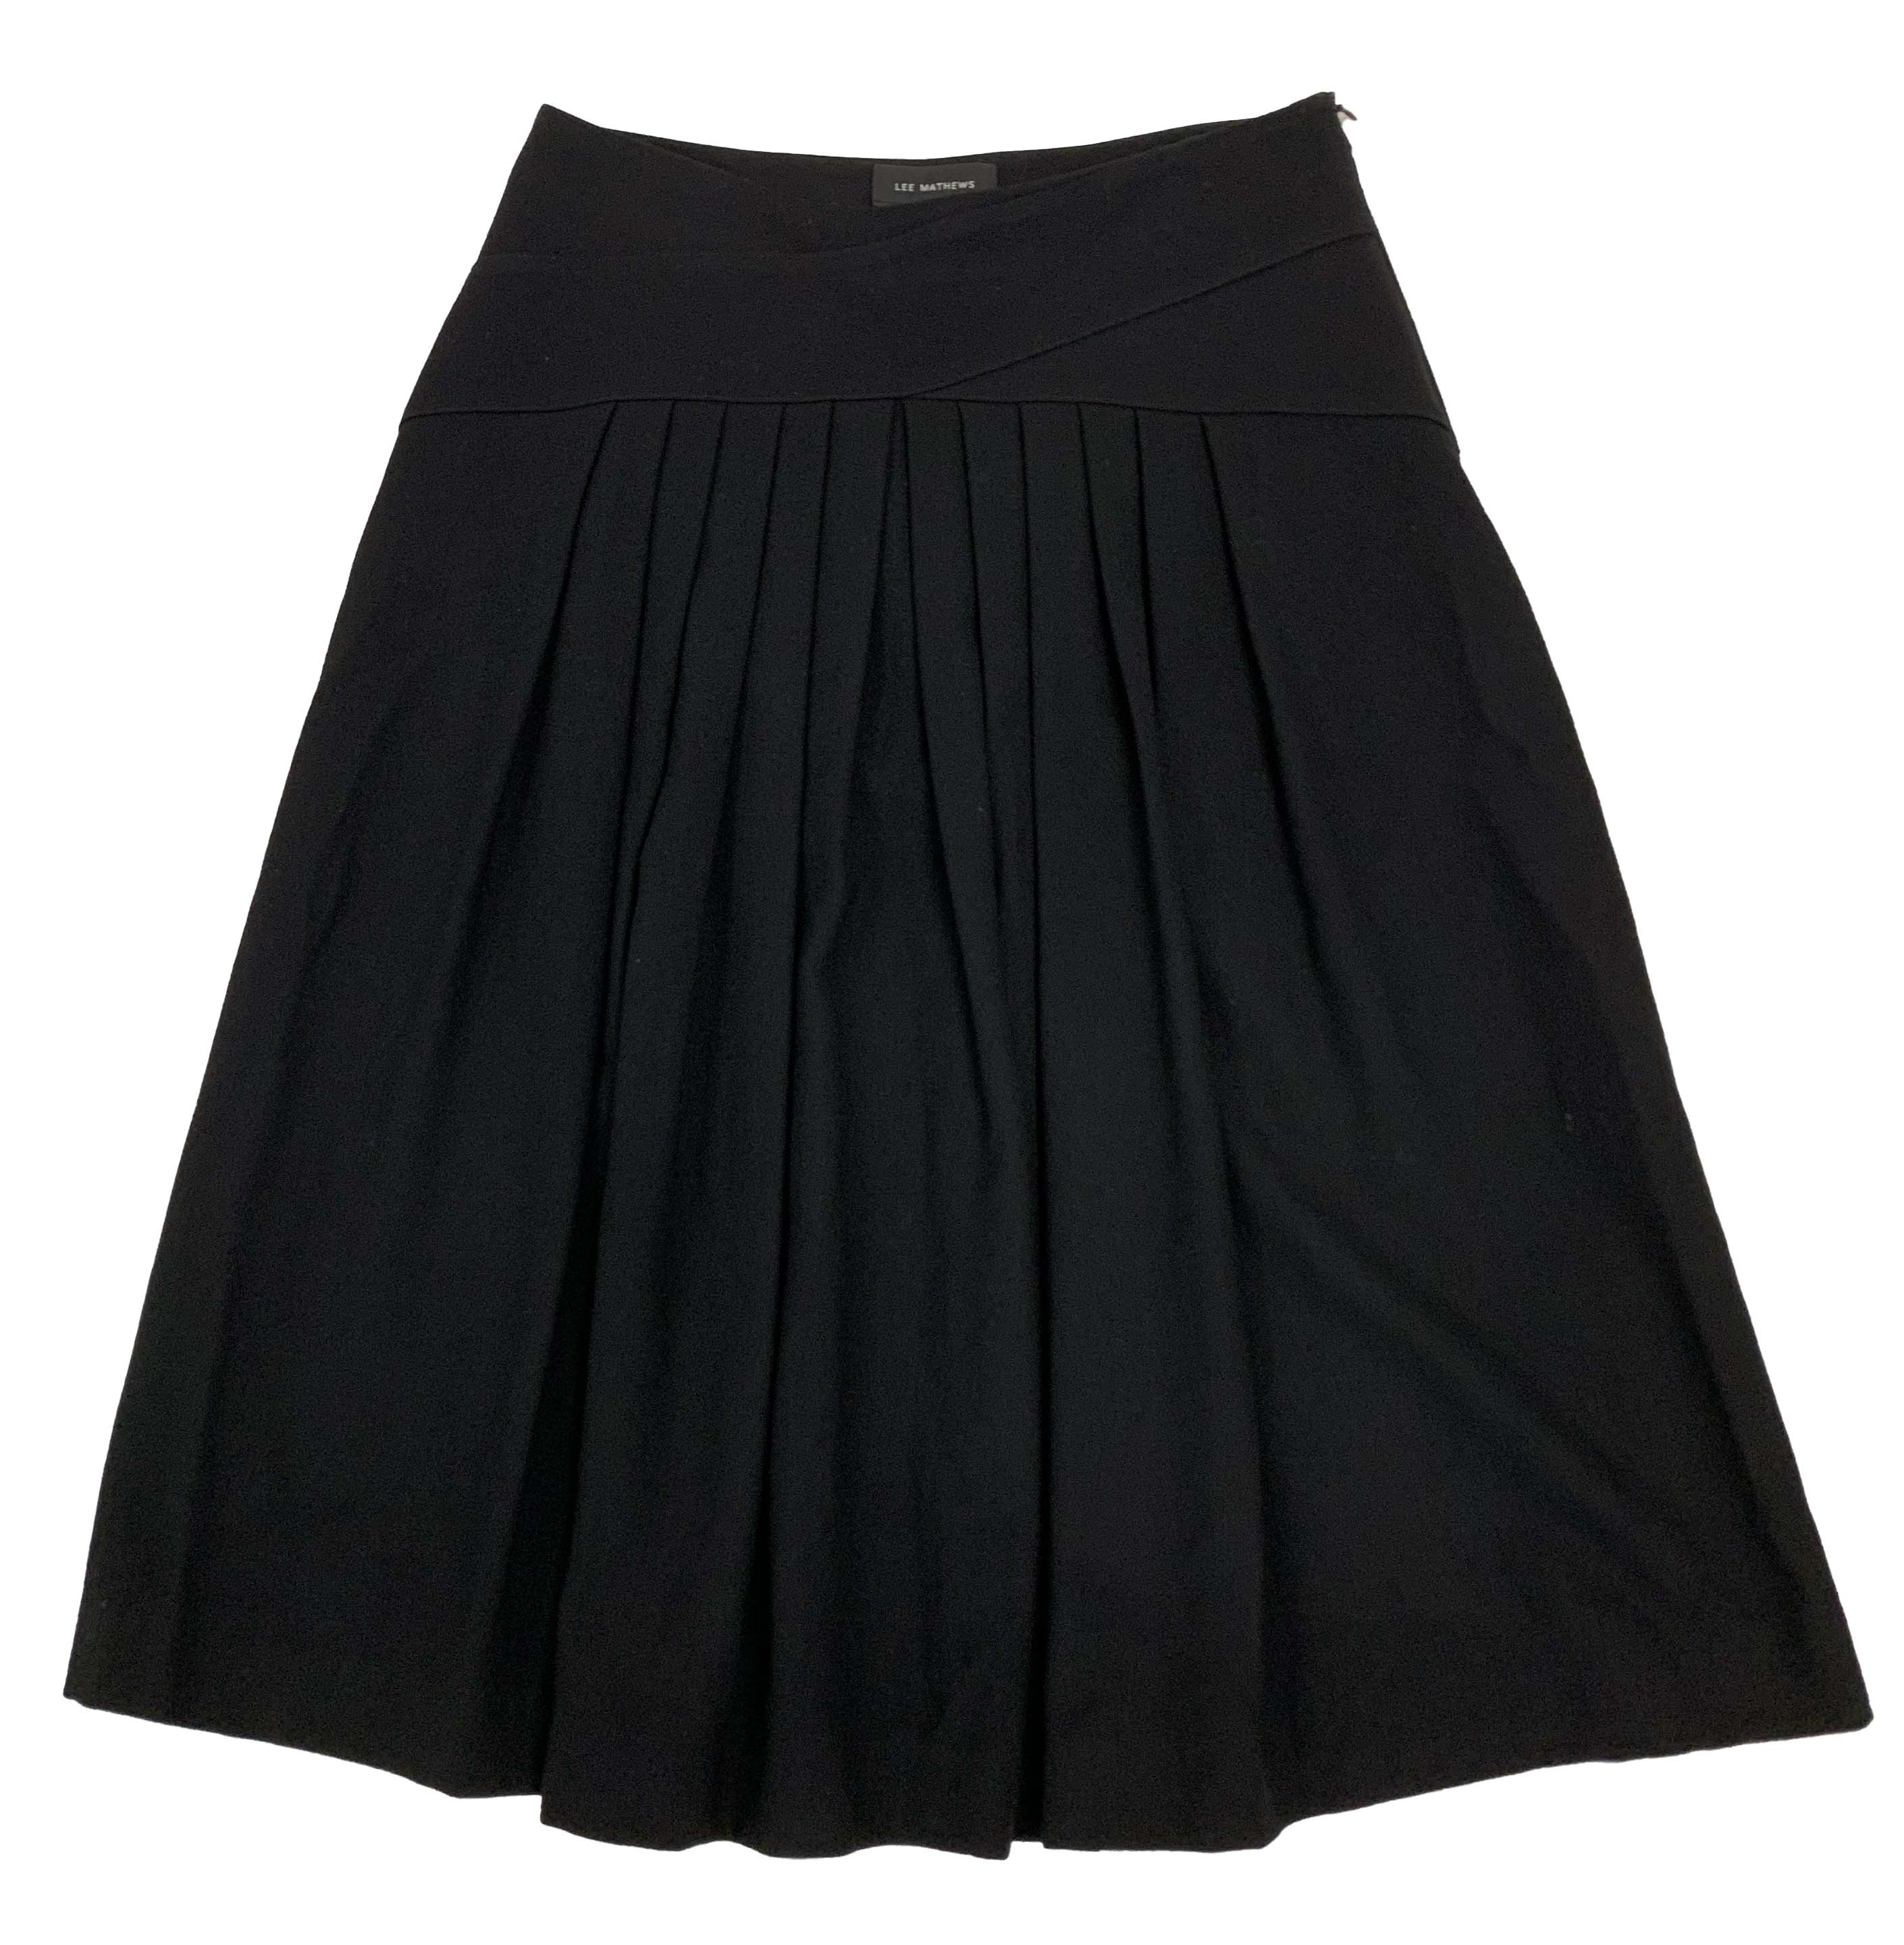 LEE MATHEWS A-line Skirt